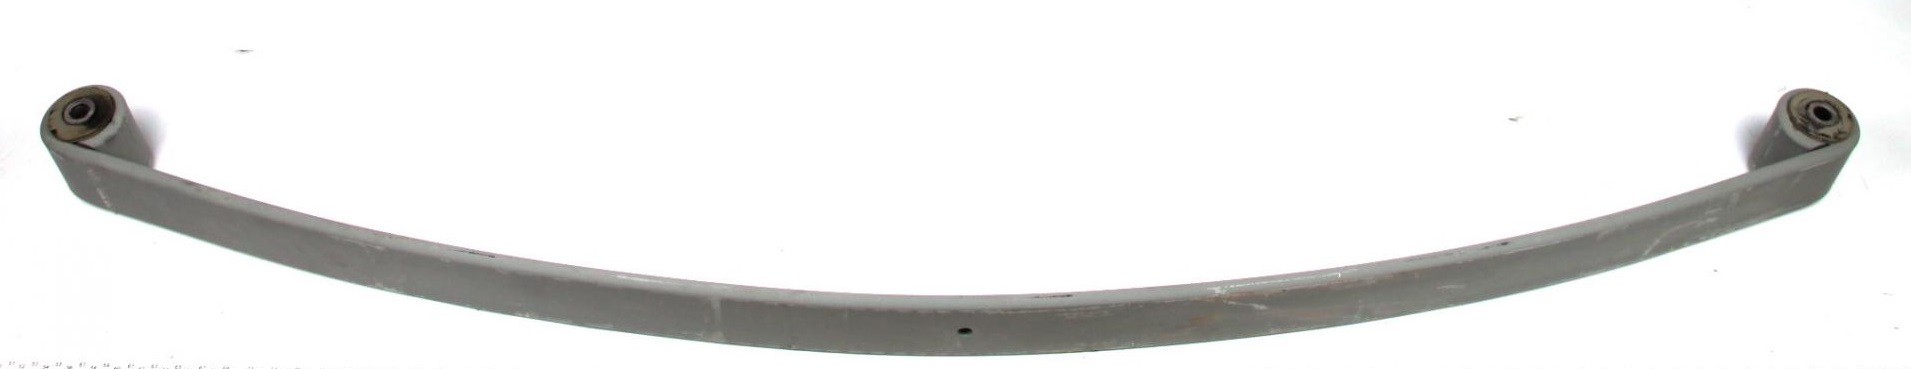 Рессора задняя коренная MAN 8.150 -00 (80/800/800) 14mm